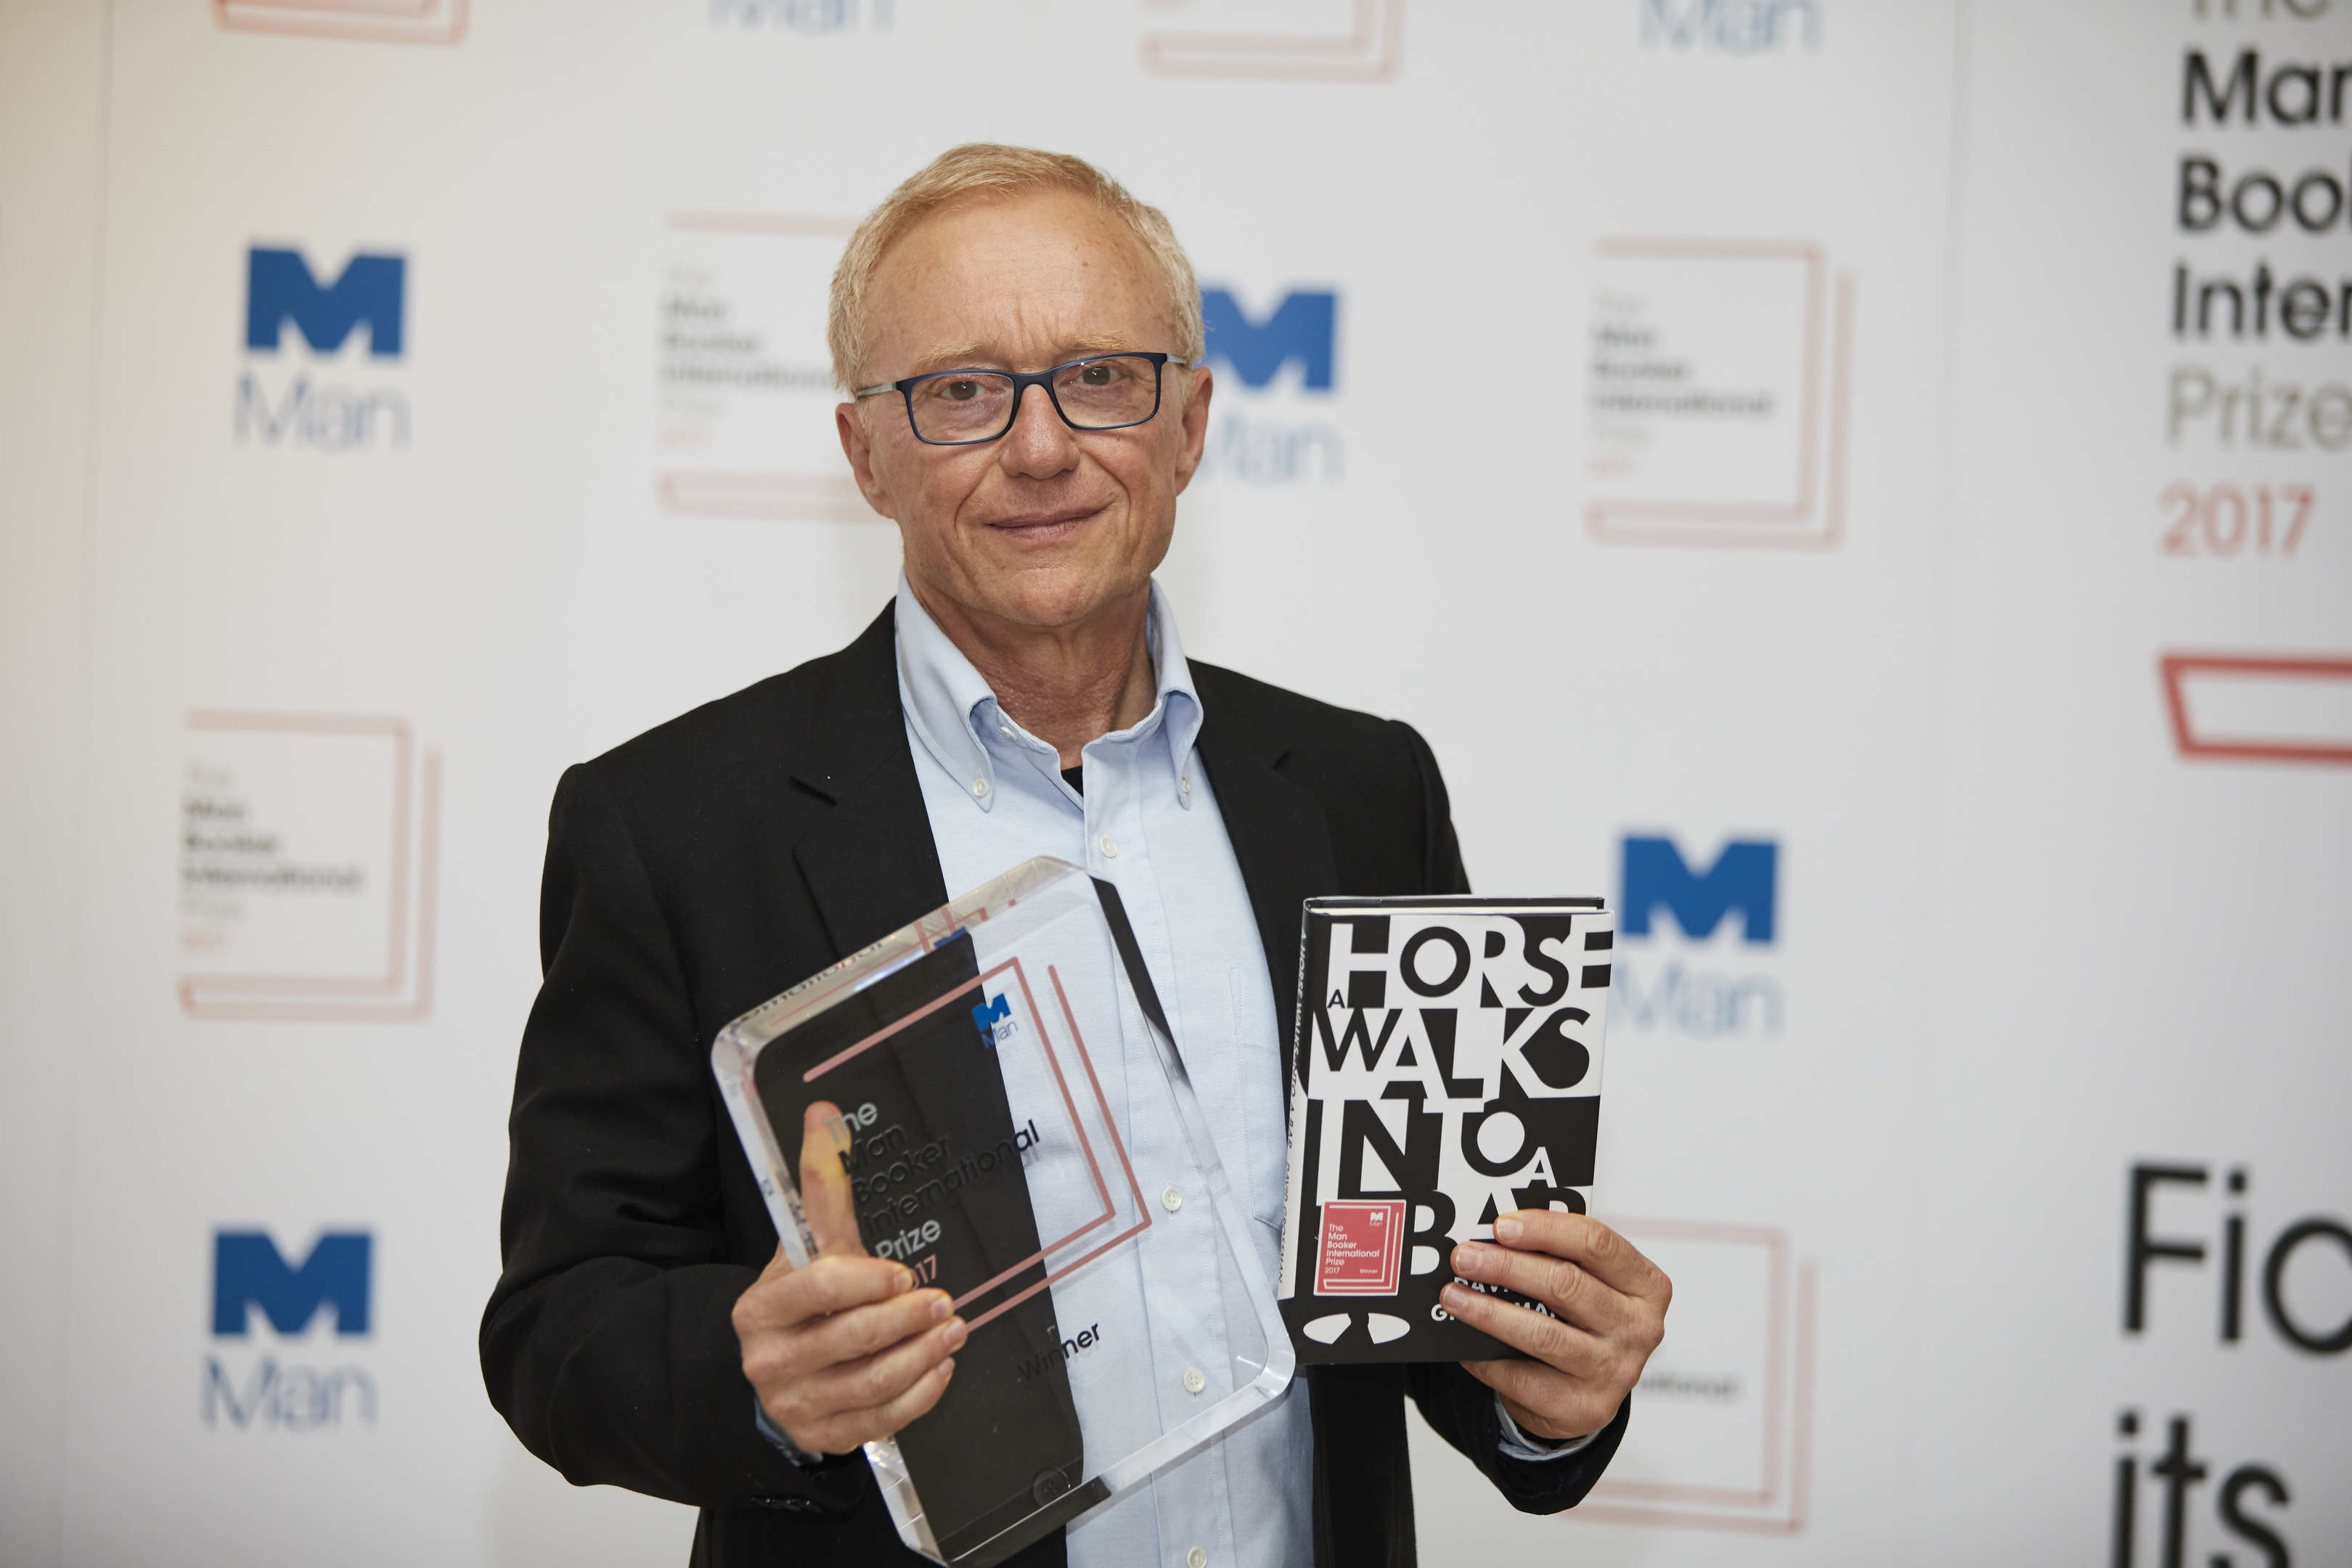 David Grossman wins the 2017 Man Booker International Prize